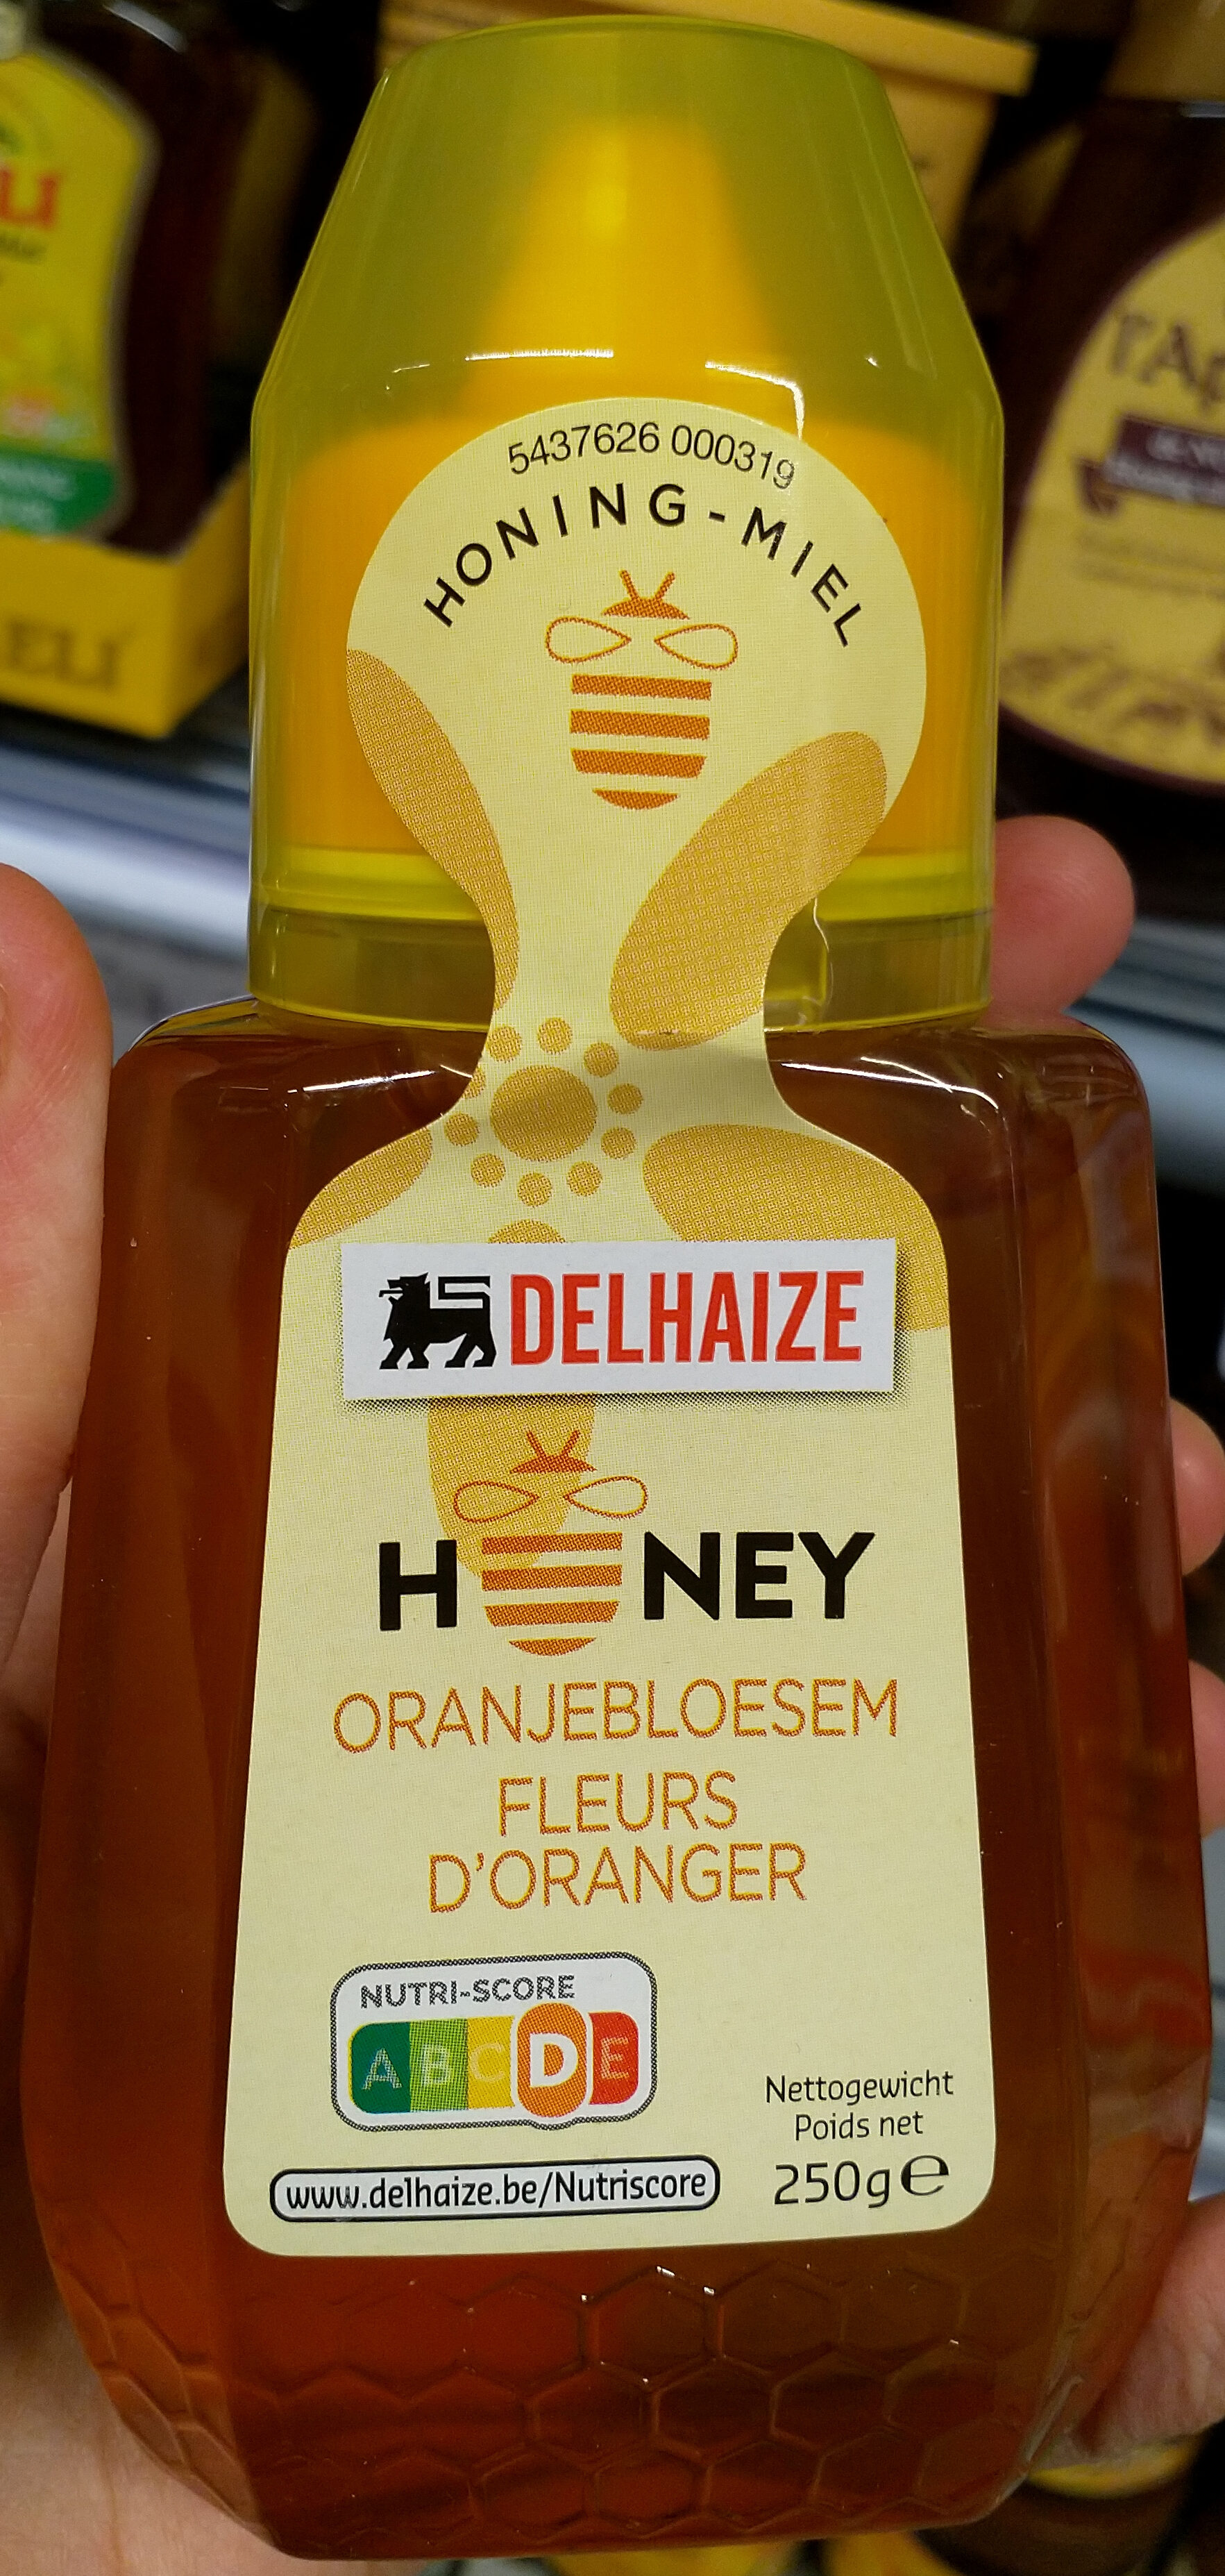 Honey fleurs d'oranger - Product - fr